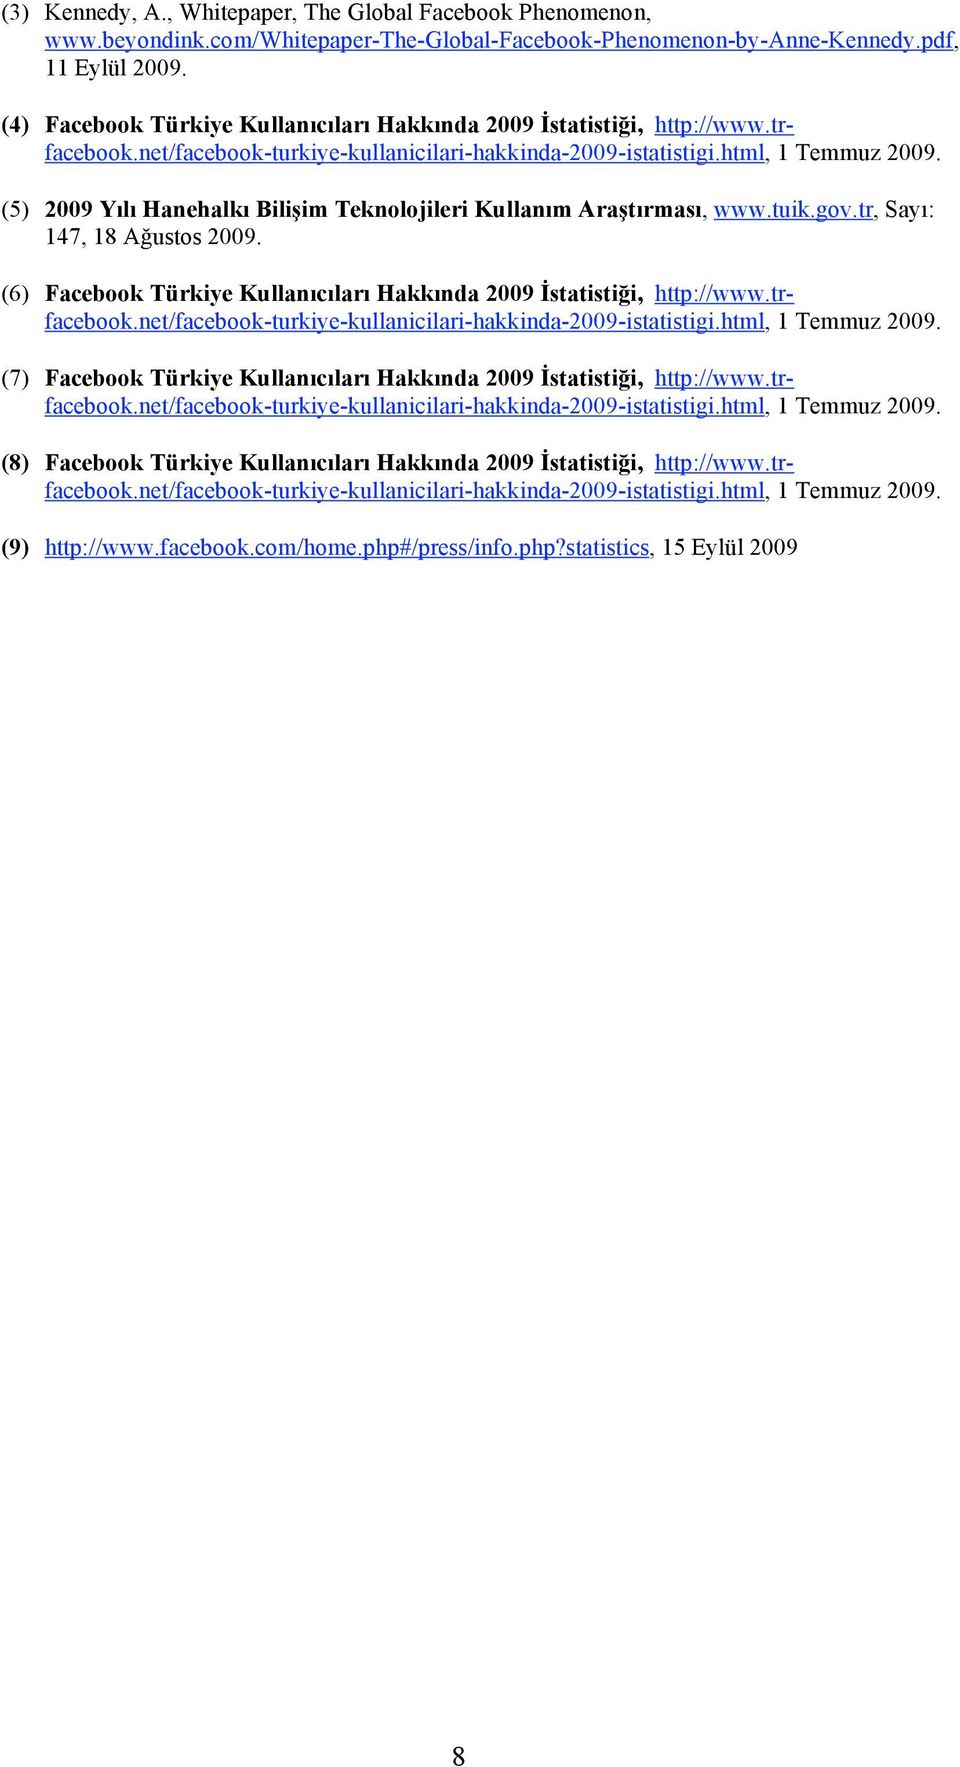 (5) 2009 Yılı Hanehalkı Bilişim Teknolojileri Kullanım Araştırması, www.tuik.gov.tr, Sayı: 147, 18 Ağustos 2009. (6) Facebook Türkiye Kullanıcıları Hakkında 2009 İstatistiği, http://www.trfacebook.